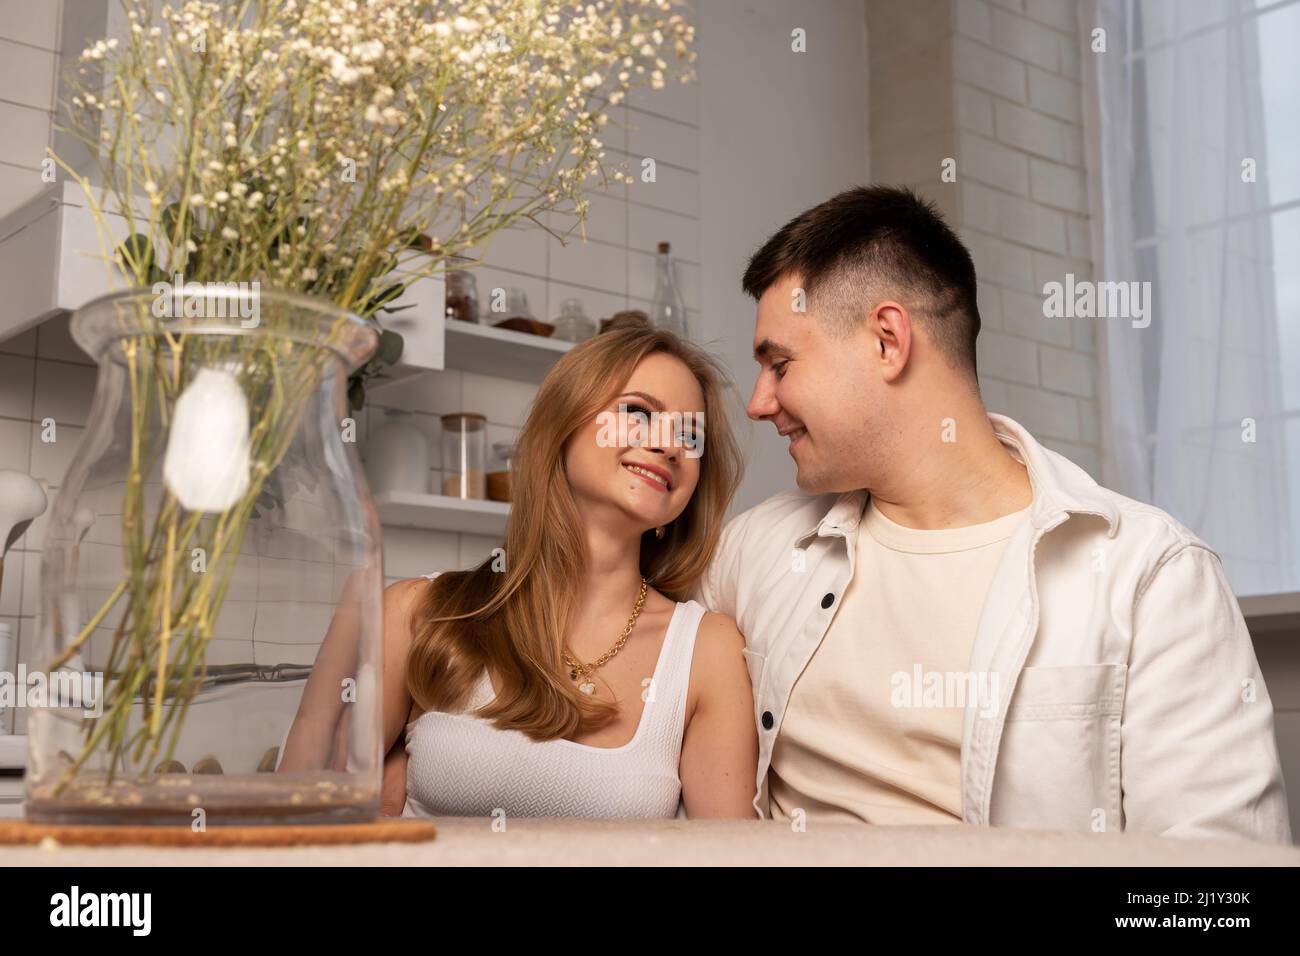 Glückliches junges Paar, das mit einer Vase mit getrockneten Blumen am Küchentisch sitzt, umarmt, einander anschaut und lächelt. Zartes, romantisches Beziehungskonzept. Hochwertige Fotos Stockfoto